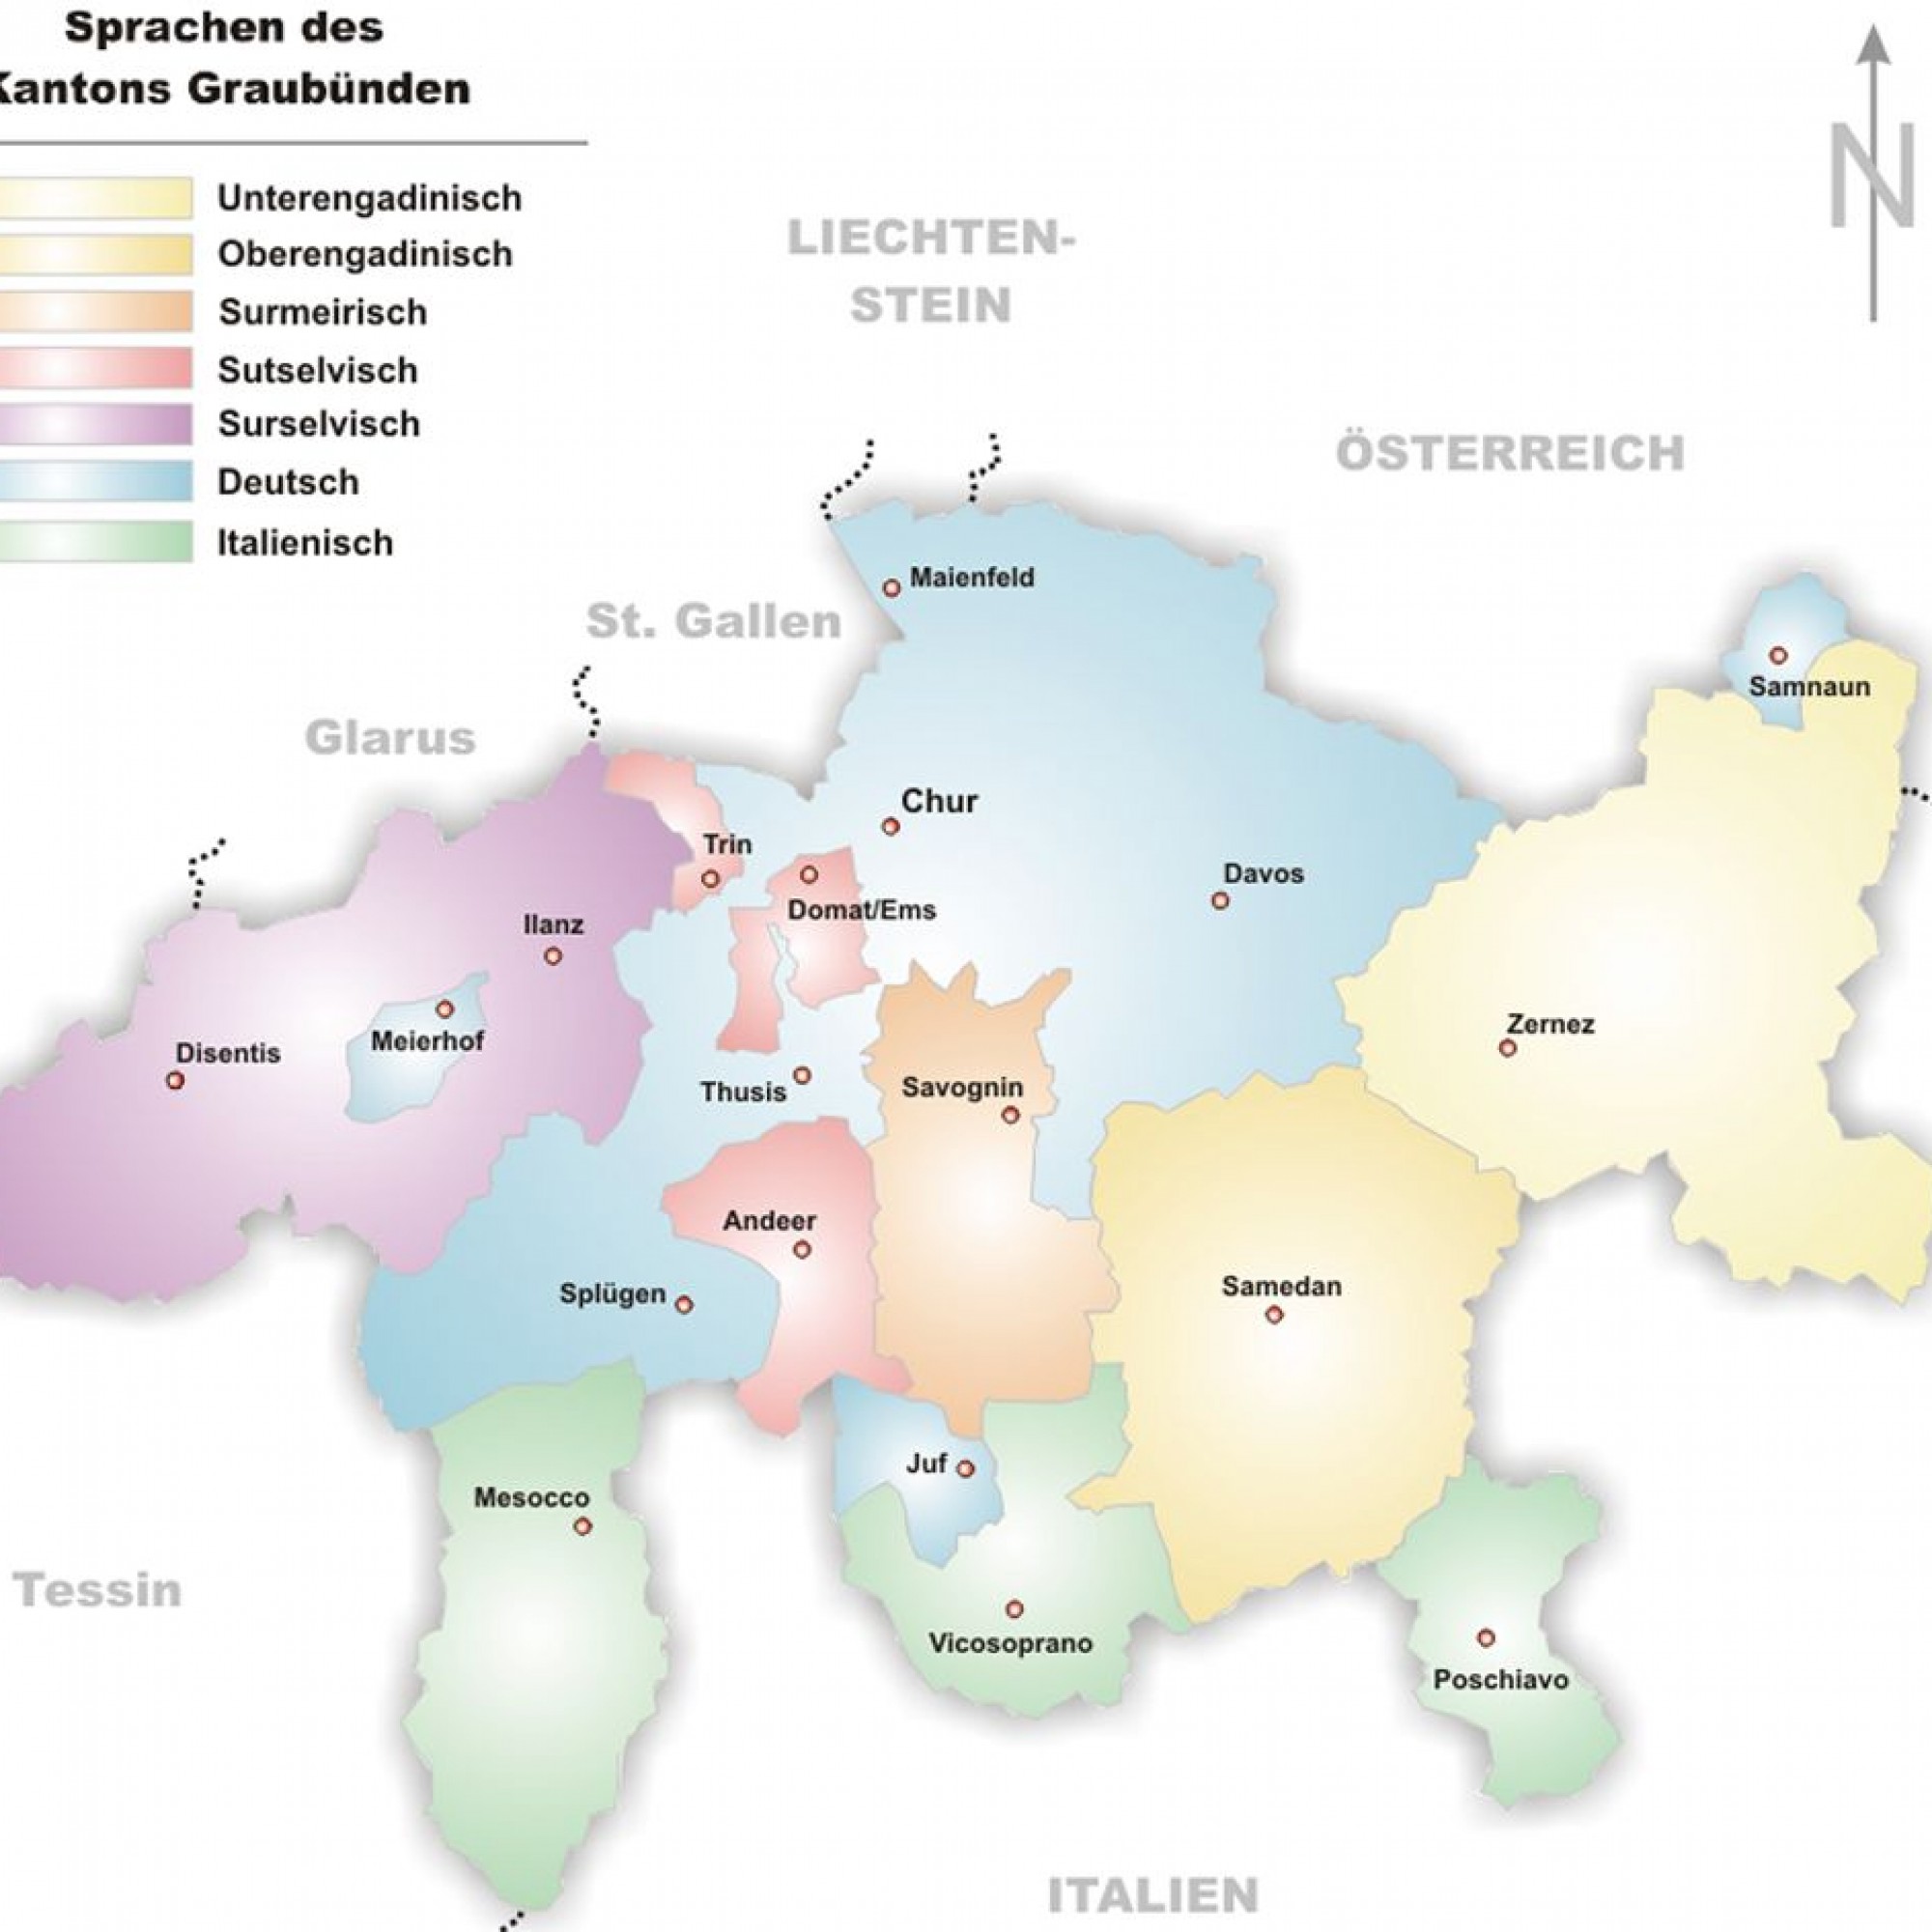 Sprachen in Graubünden